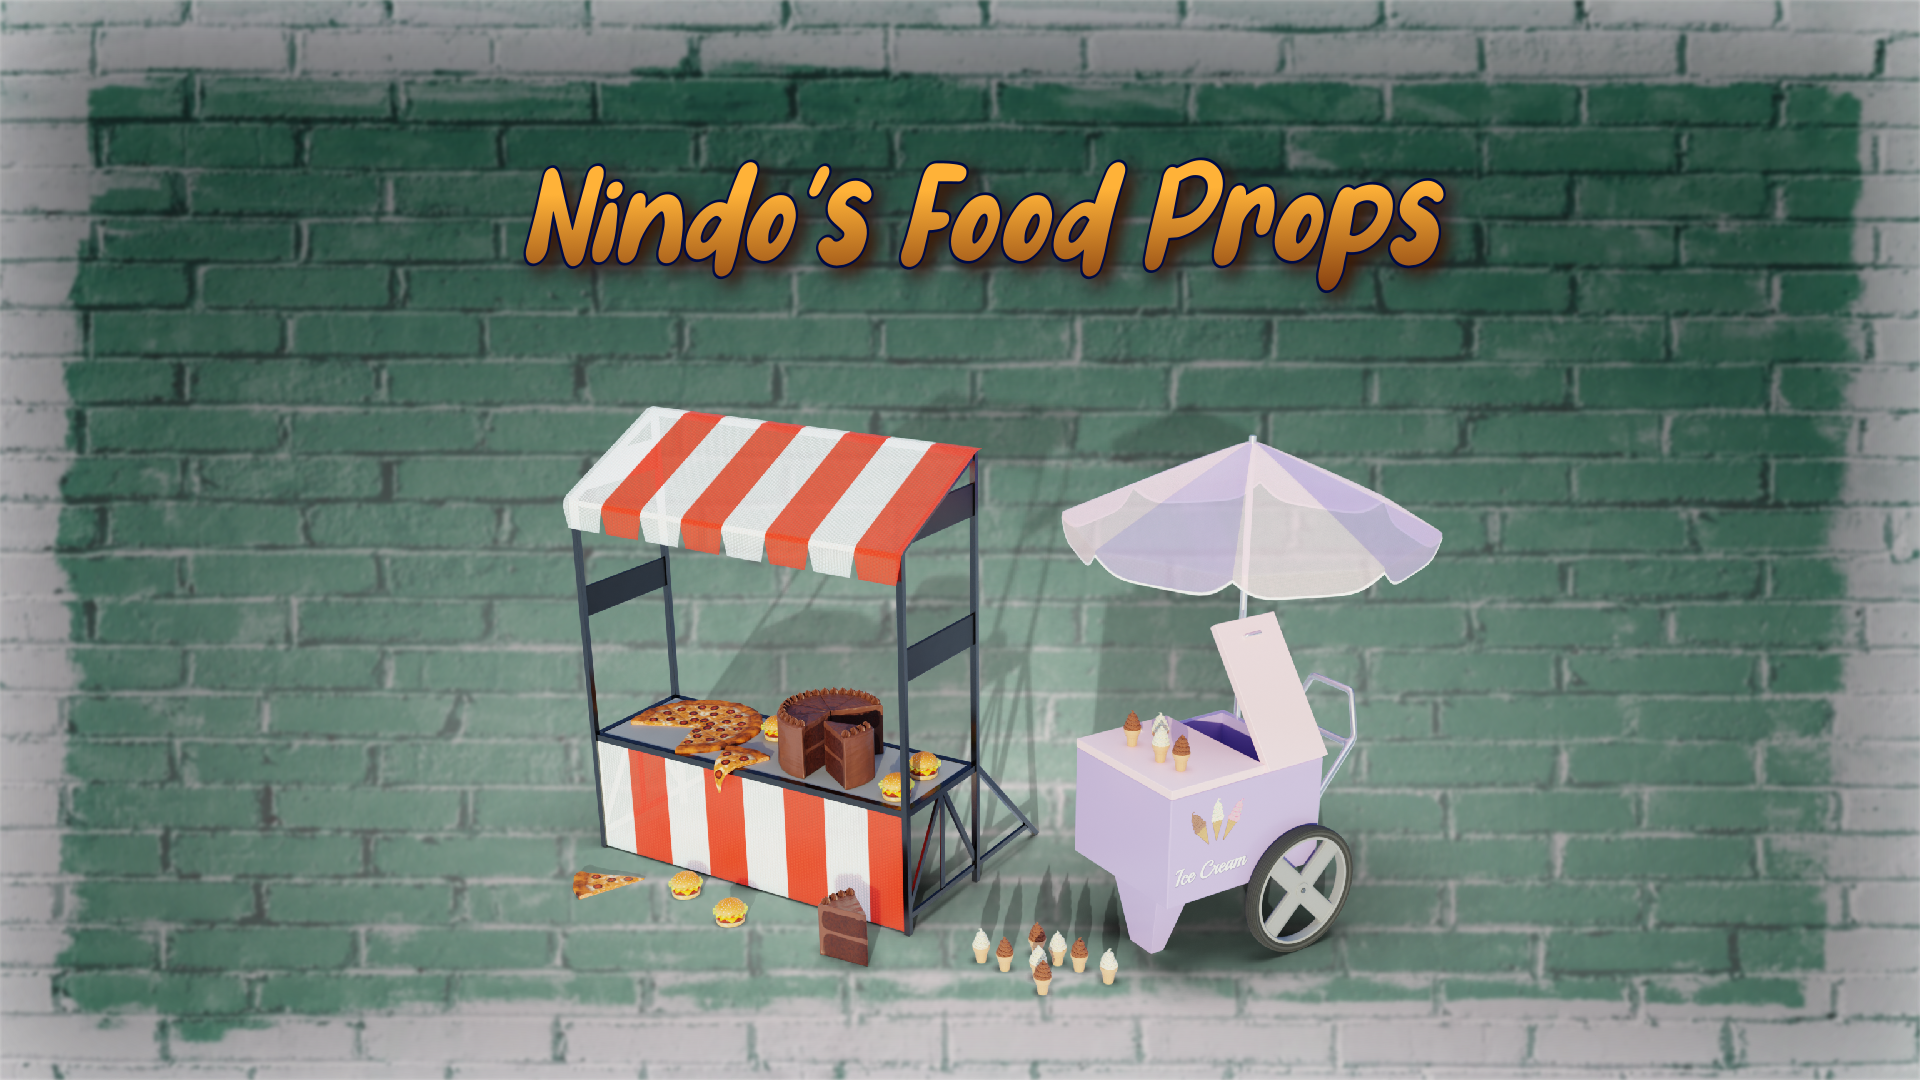 Nindo's Food Props!